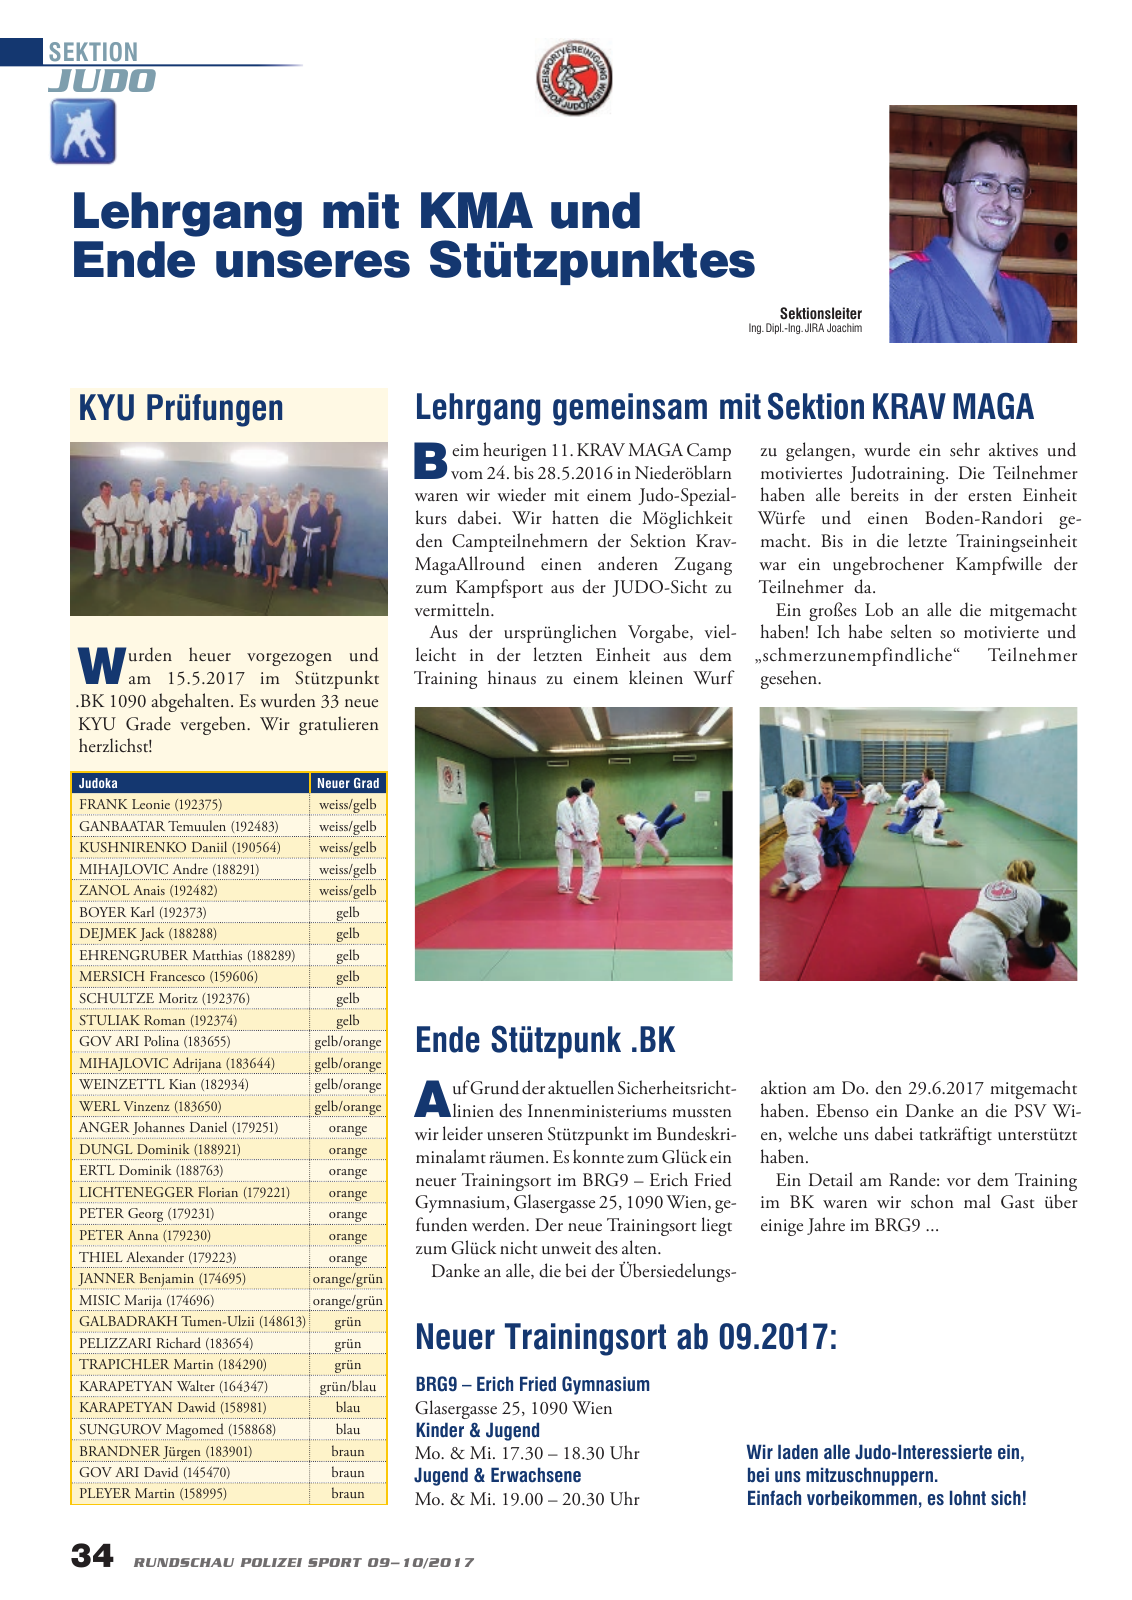 Vorschau Rundschau Polizei Sport 09-10/2017 Seite 34